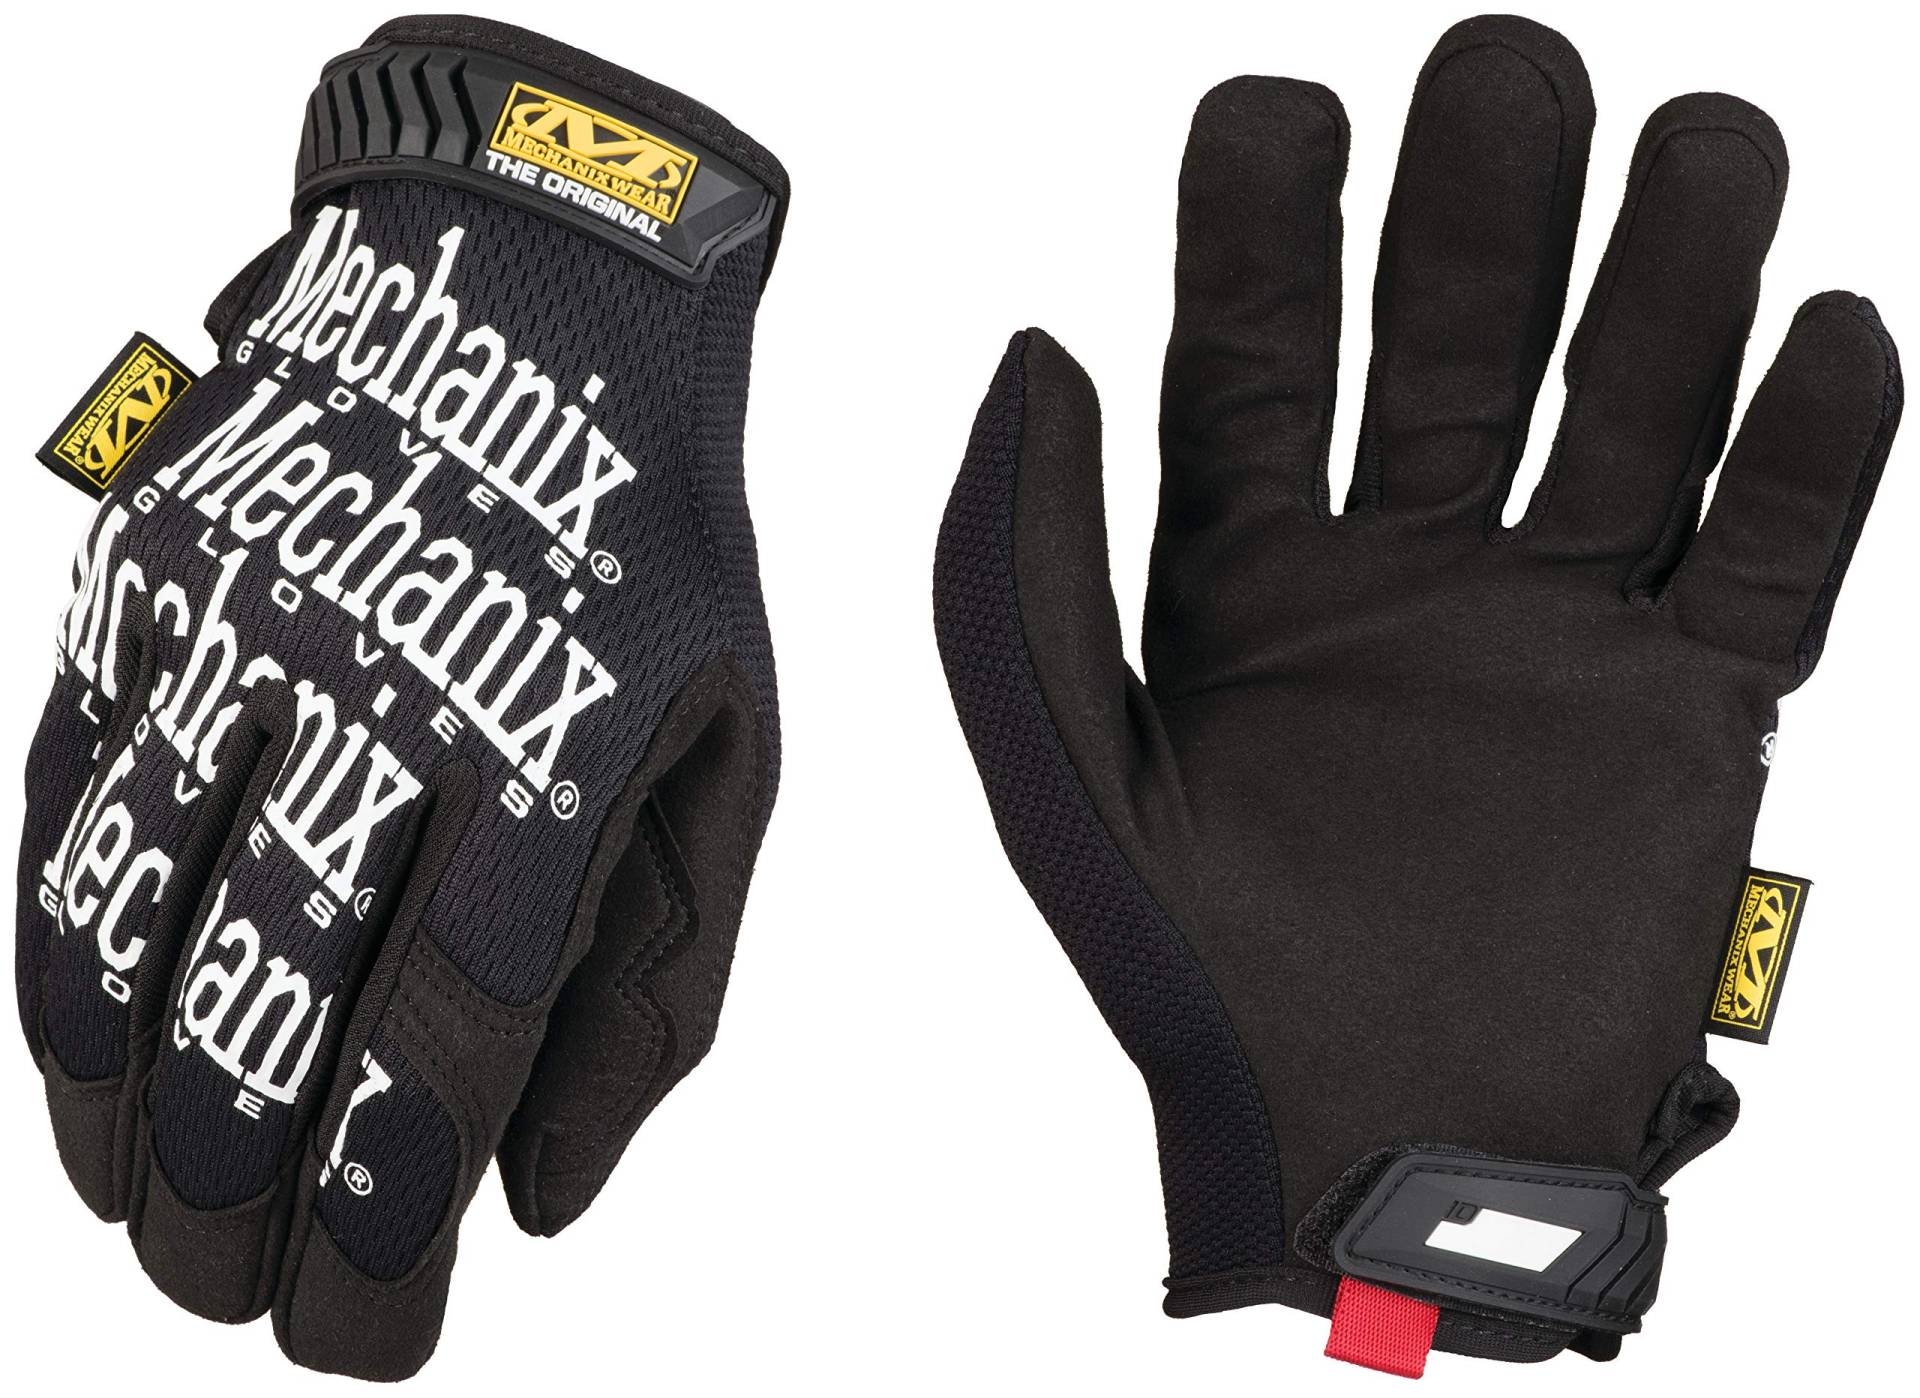 Mechanix Wear: Original Arbeitshandschuh mit sicherer Passform, Kunstleder-Performance-Handschuhe für den Mehrzweckeinsatz, langlebige, Touchscreen-fähige Sicherheitshandschuhe (Schwarz, Medium) von Mechanix